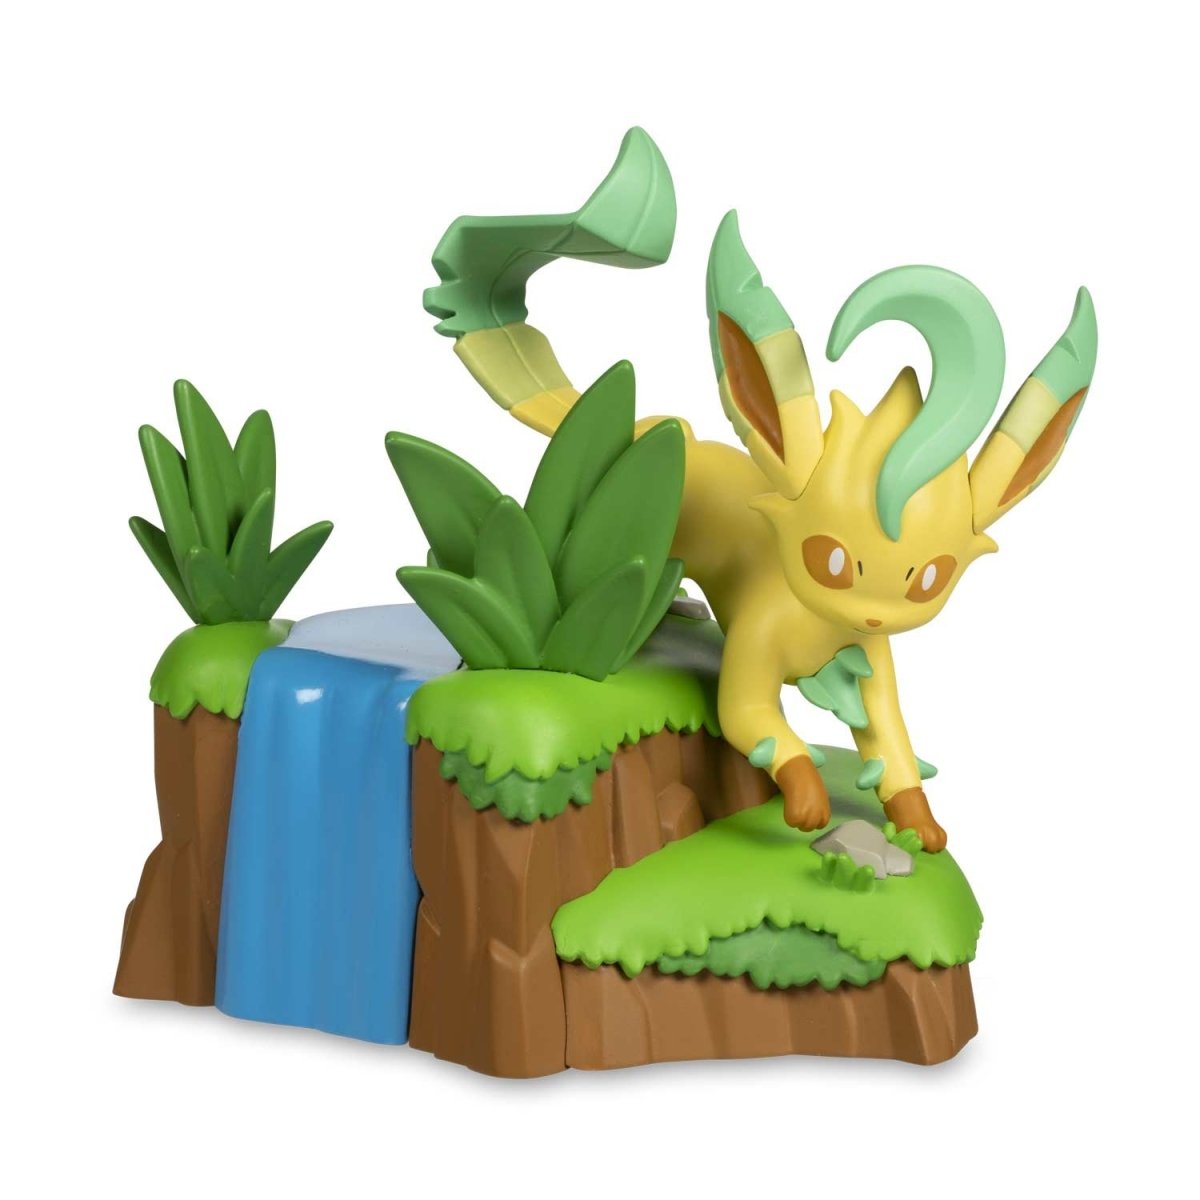 Pokemon - Eevee & Friends: Leafeon Figure by Funko